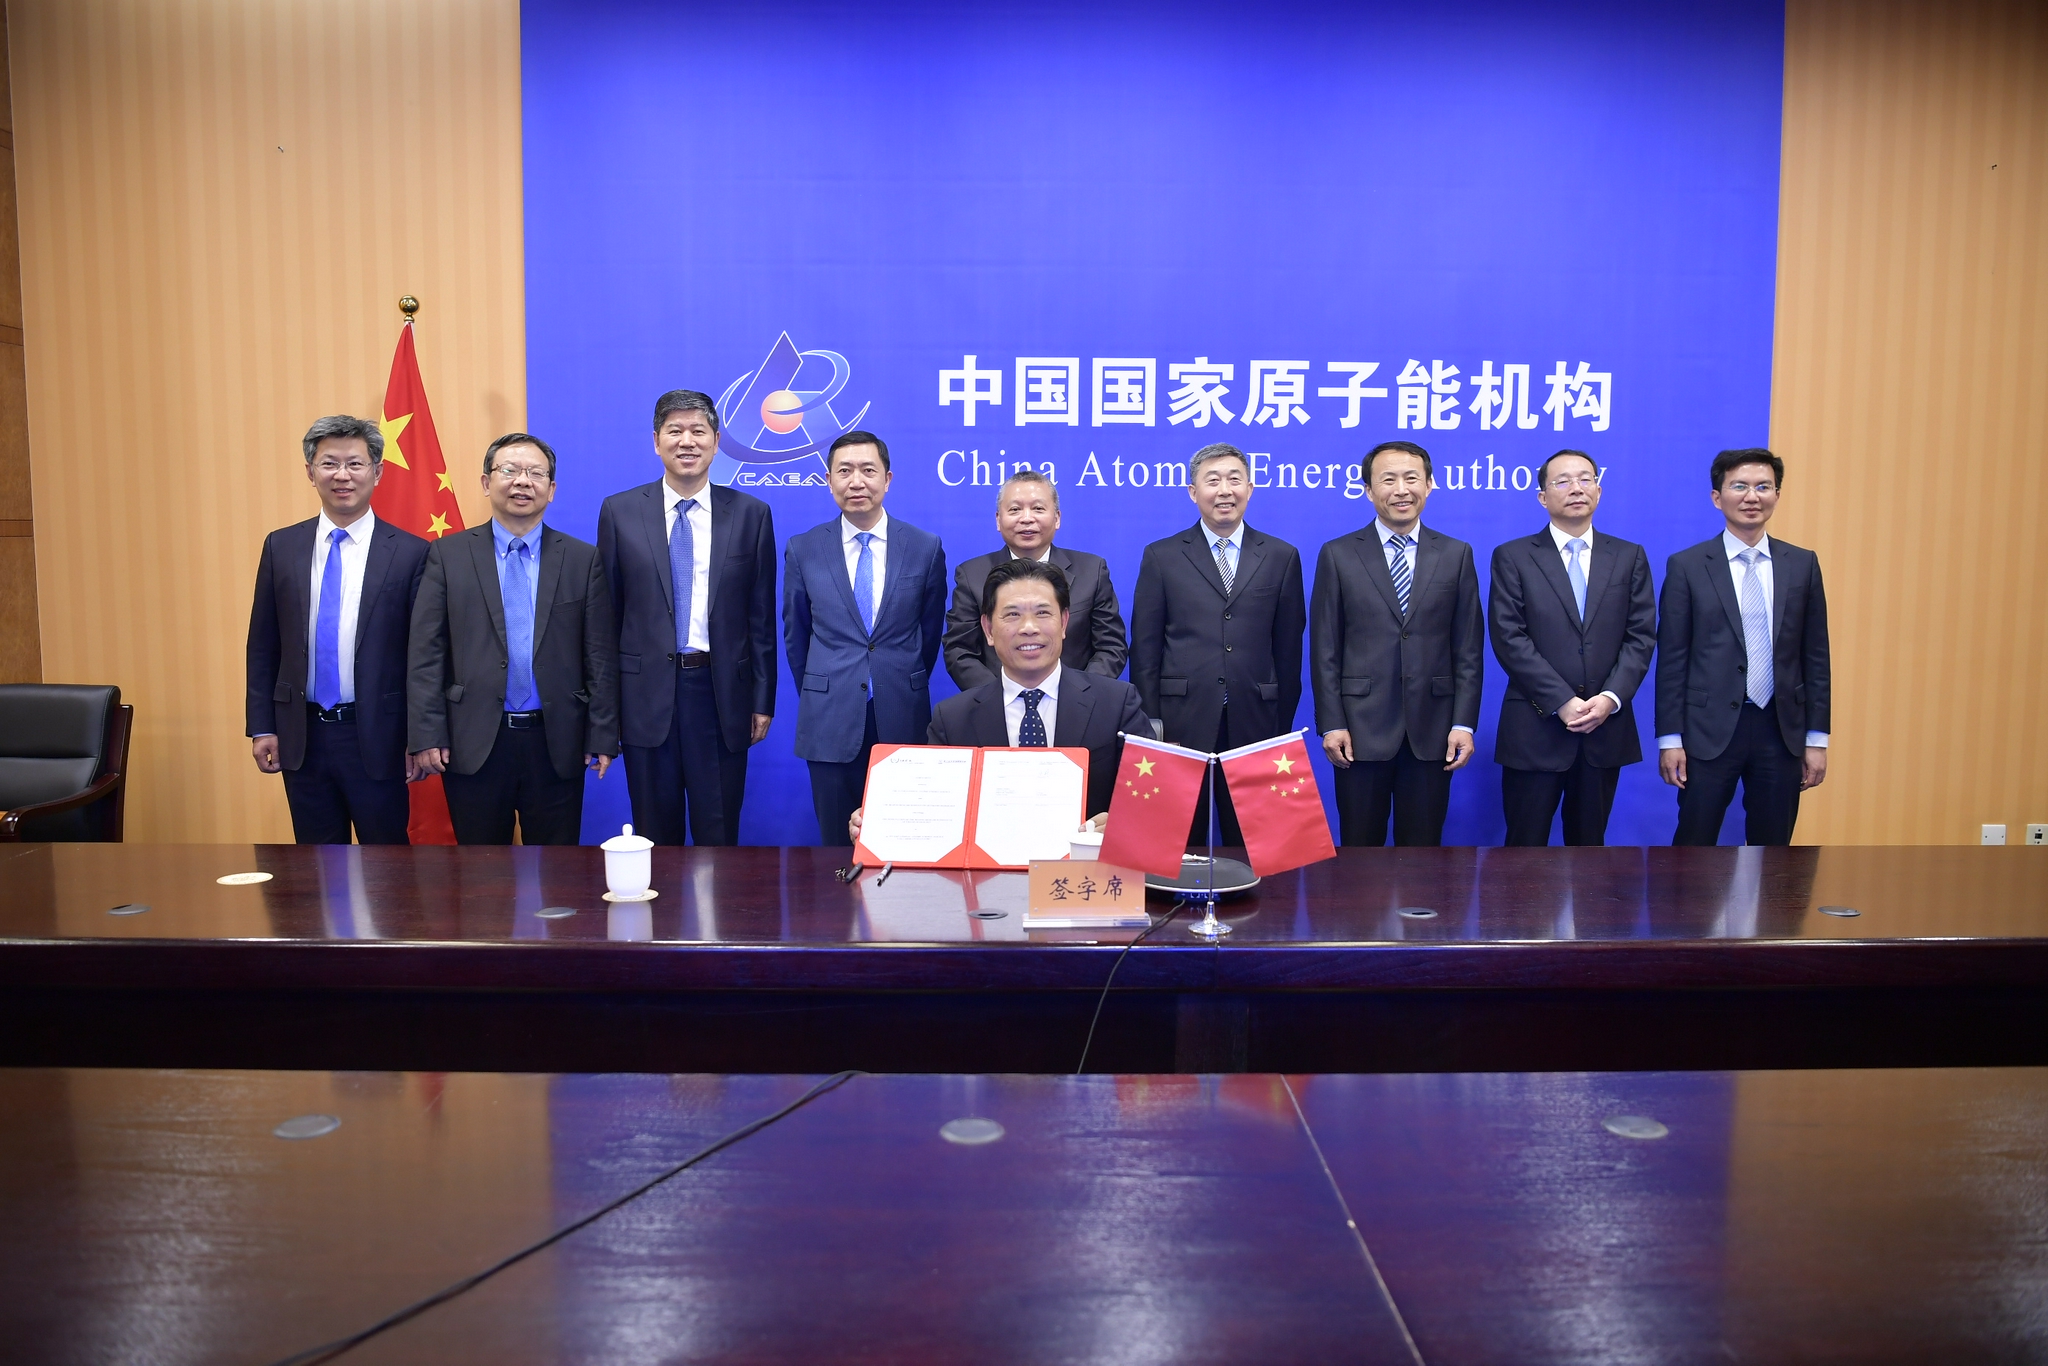 中国国家原子能机构与国际原子能机构共同见证协作中心协议签署